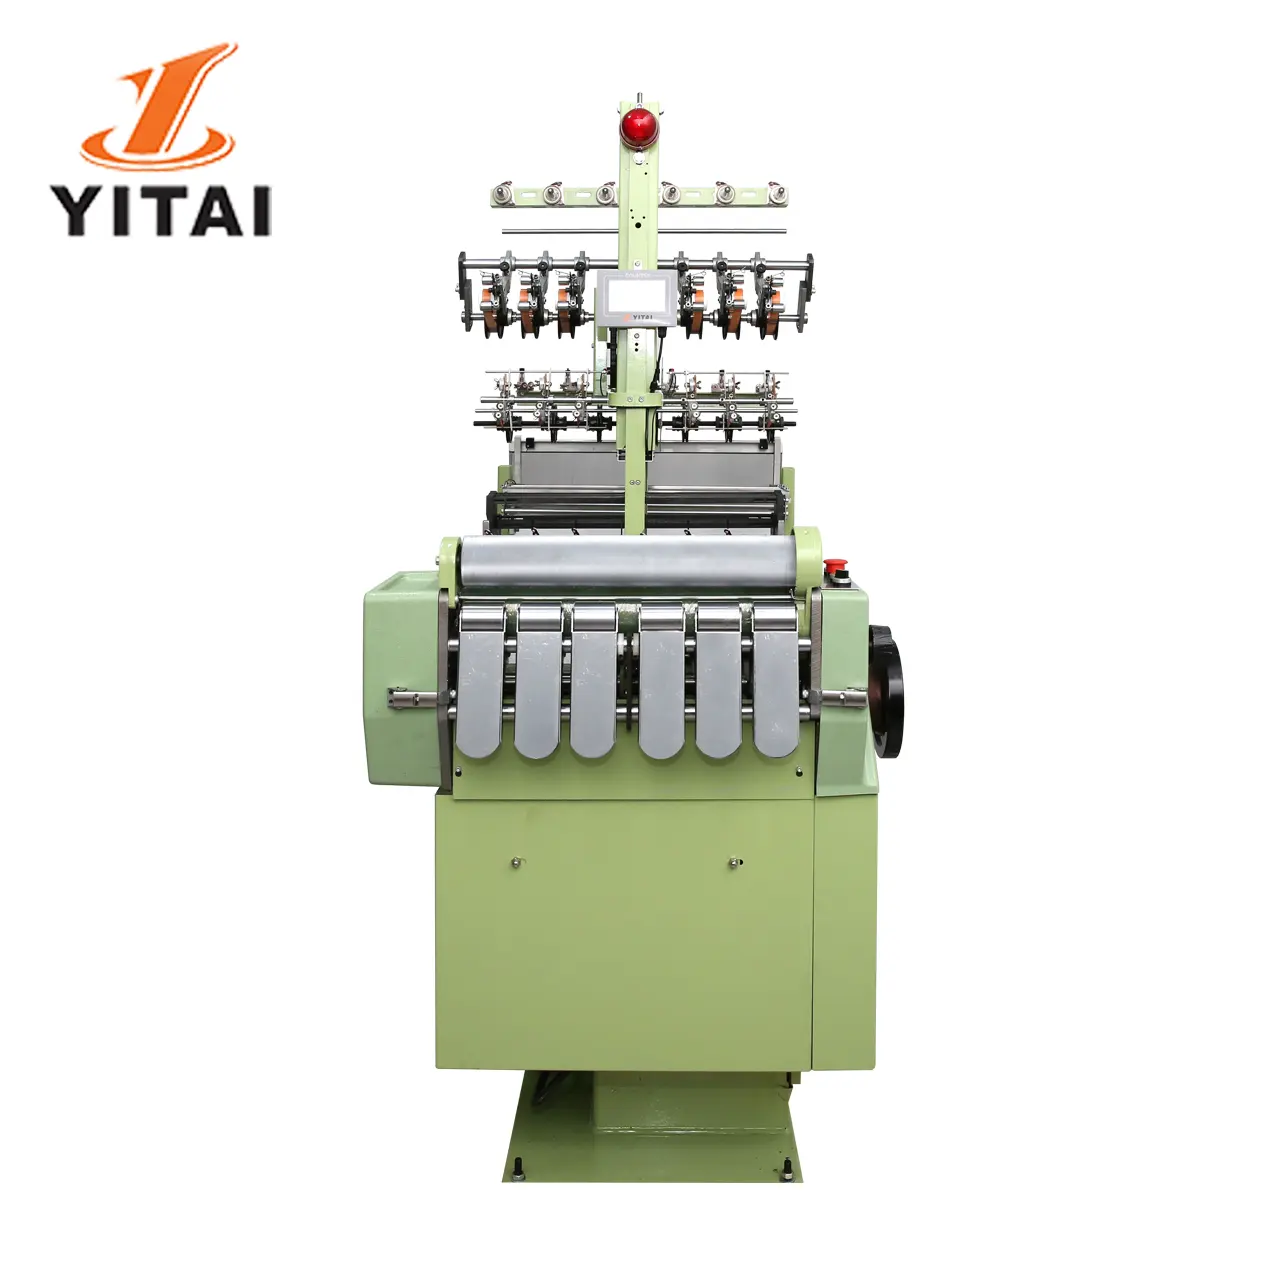 Yitai-máquina de tejer, precio económico, banda elástica para el pelo, ropa interior, máquinas de tejer de correa de tela